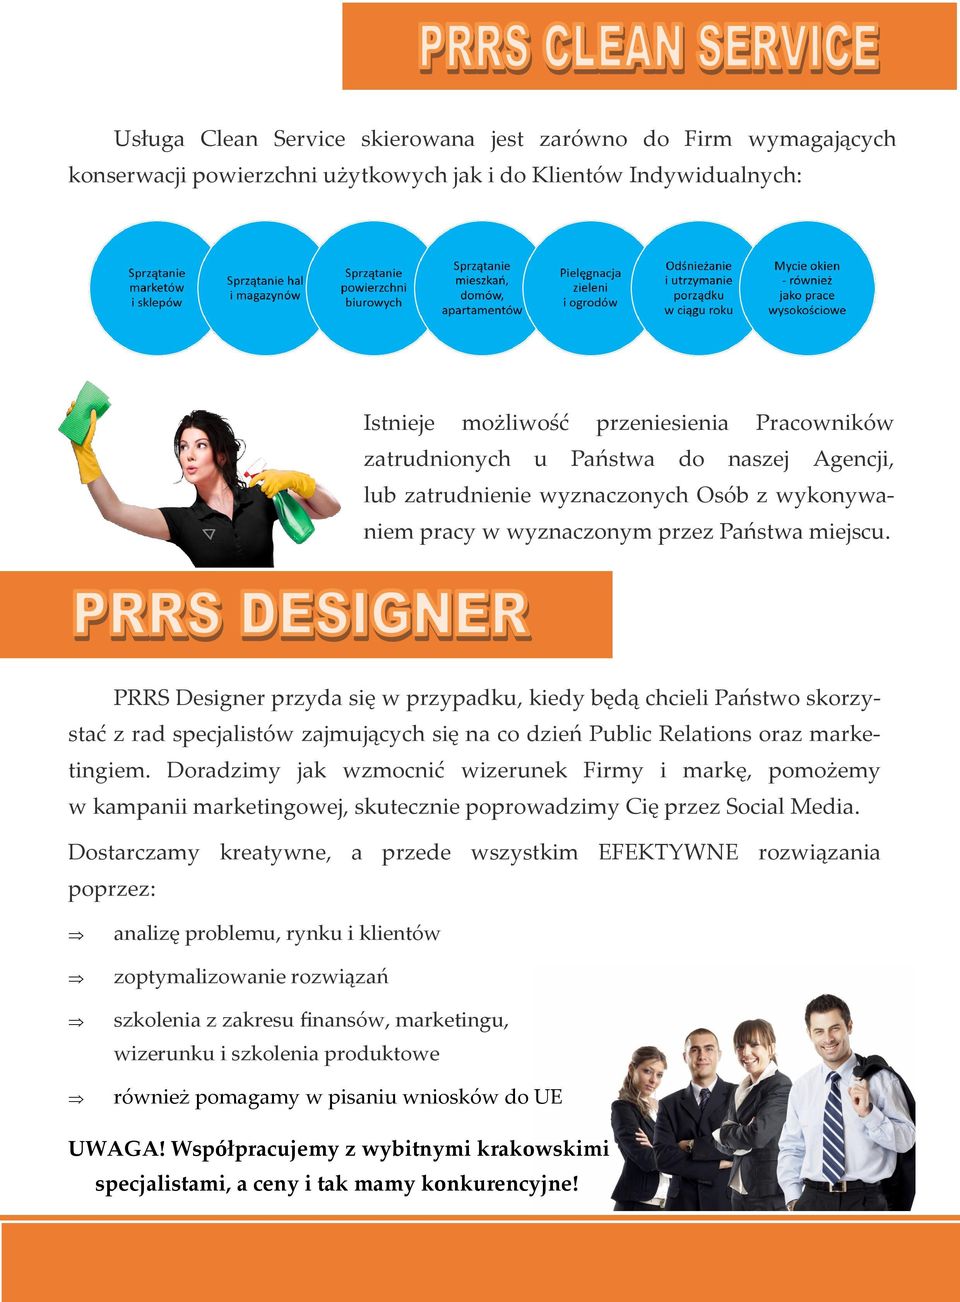 PRRS Designer przyda się w przypadku, kiedy będą chcieli Państwo skorzystać z rad specjalistów zajmujących się na co dzień Public Relations oraz marketingiem.